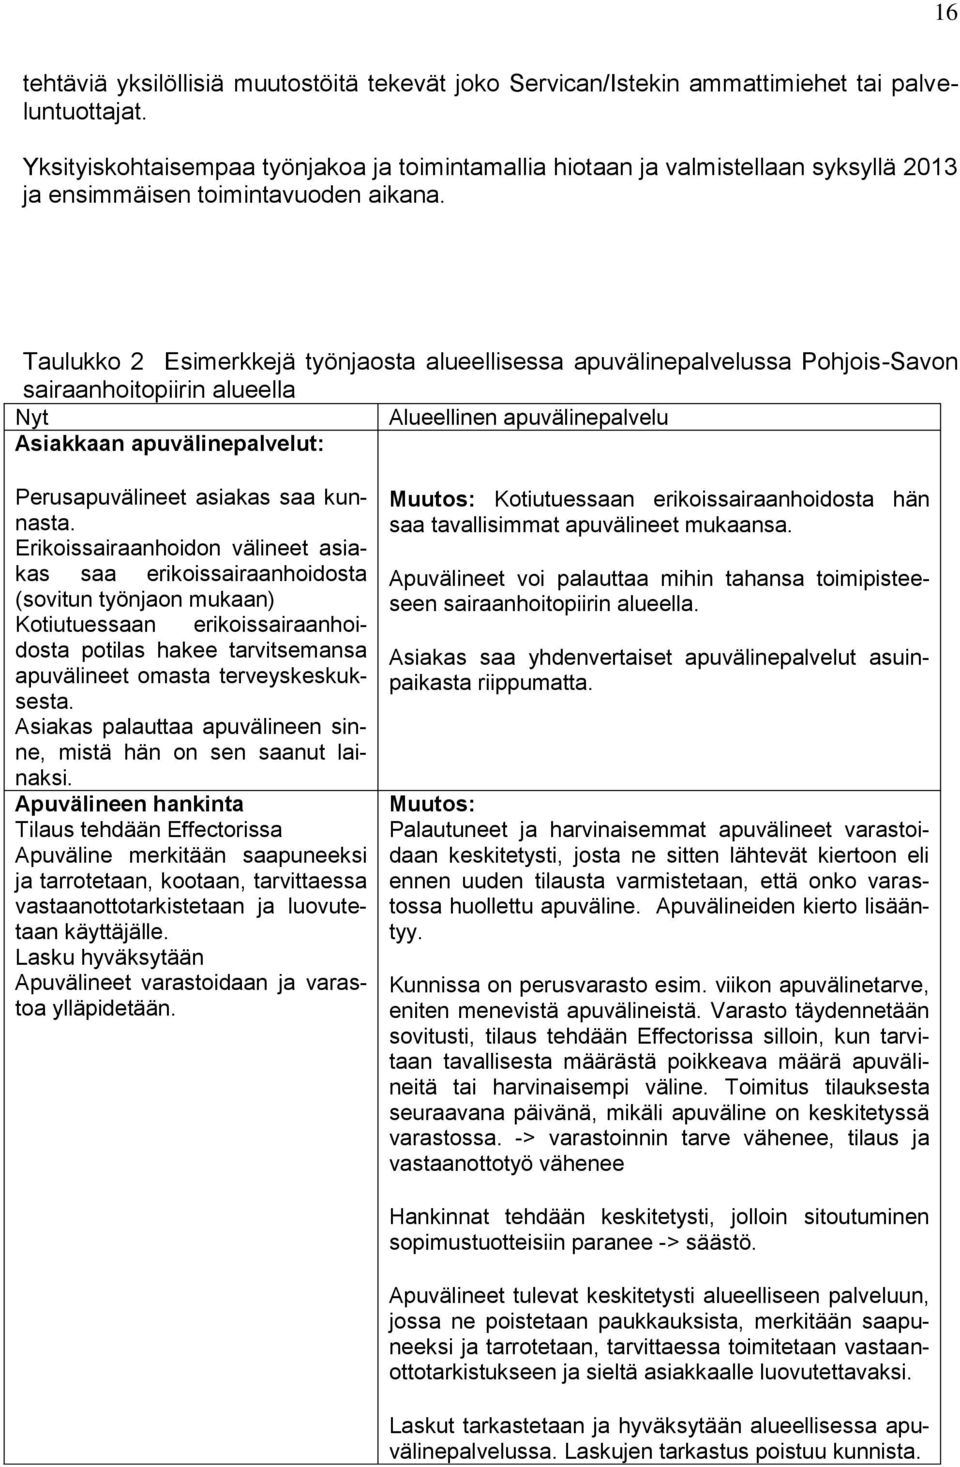 Taulukko 2 Esimerkkejä työnjaosta alueellisessa apuvälinepalvelussa Pohjois-Savon sairaanhoitopiirin alueella Nyt Alueellinen apuvälinepalvelu Asiakkaan apuvälinepalvelut: Perusapuvälineet asiakas